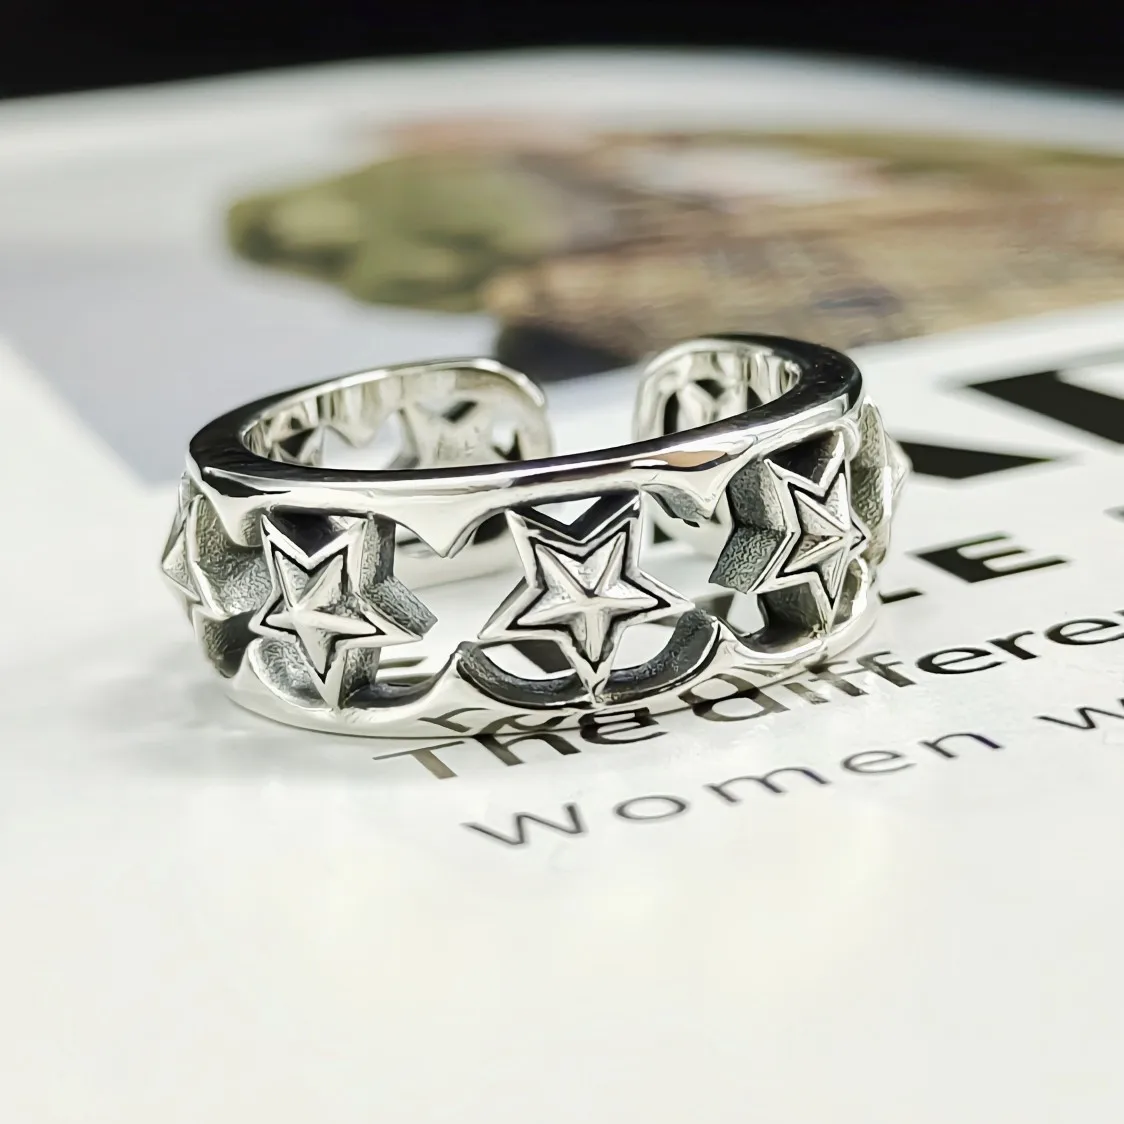 

Женское кольцо из серебра 925 пробы, с вырезами в виде звезды и пентаграммы